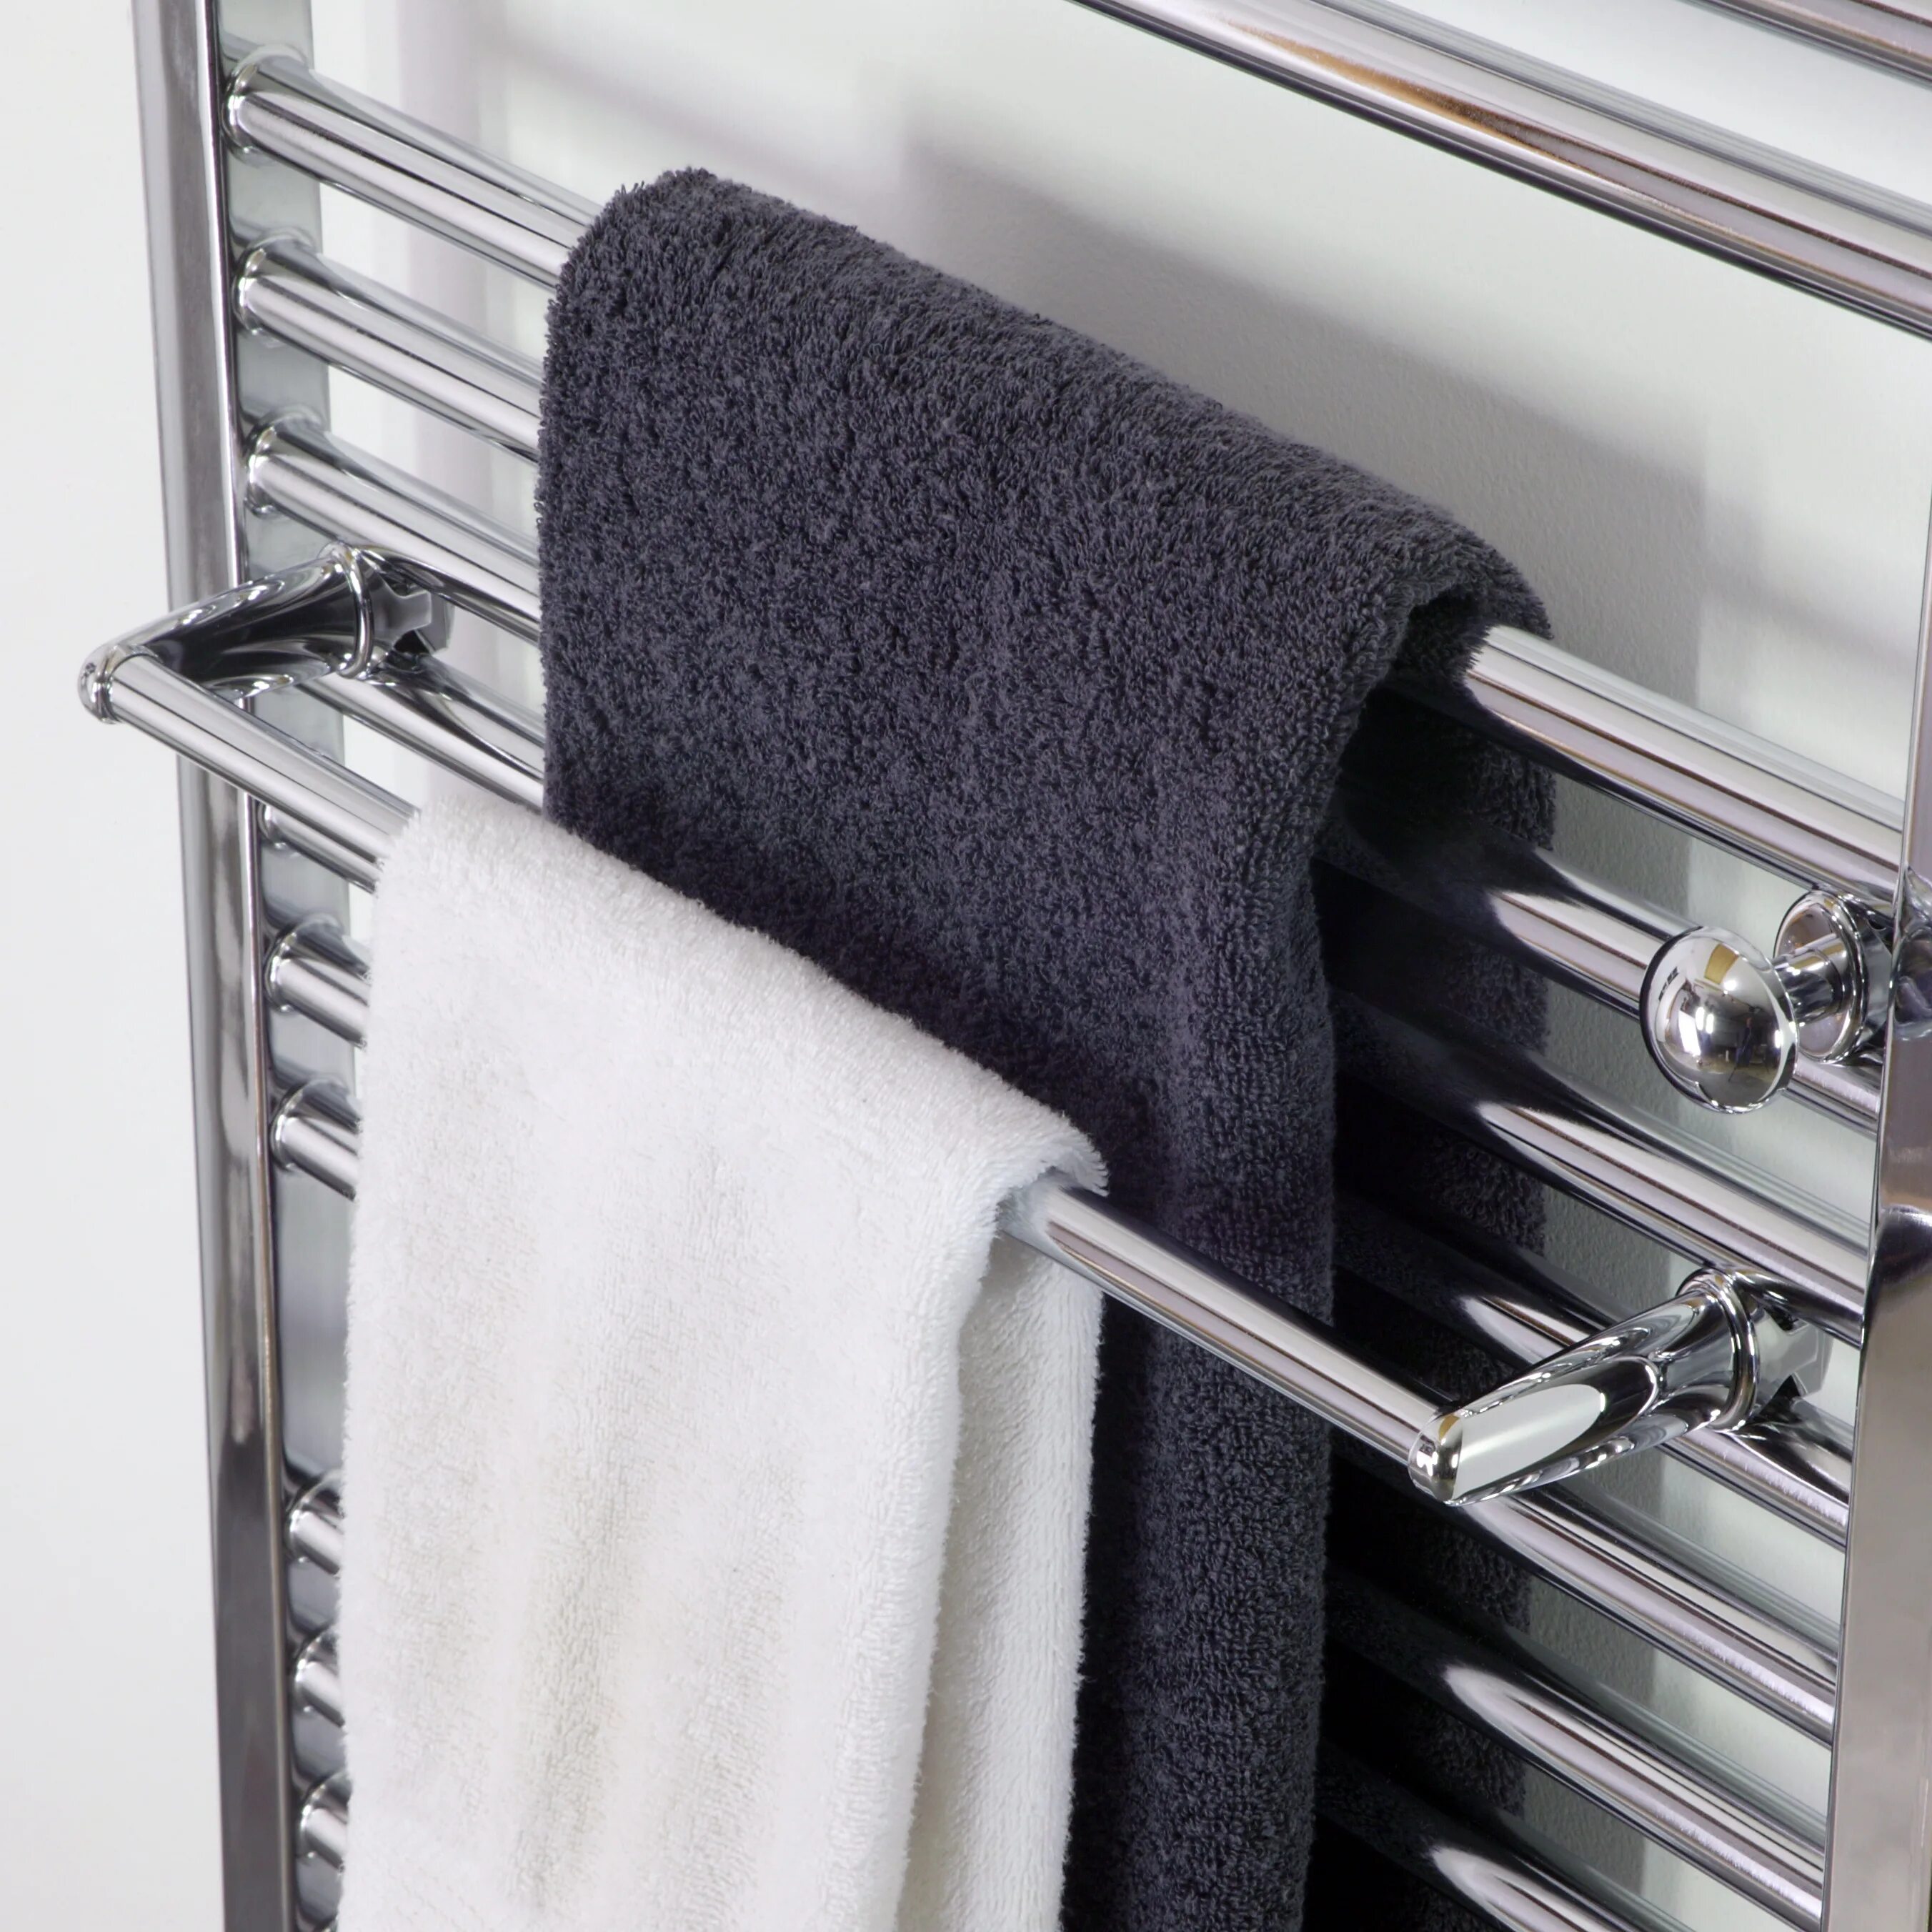 Сушилка Towel Warmer. Towel Rack сушилка для белья. Полотенцесушитель Towel Dryer -p-352-500. Полотенцесушитель Towel Rack r116. Черные полотенца для ванной